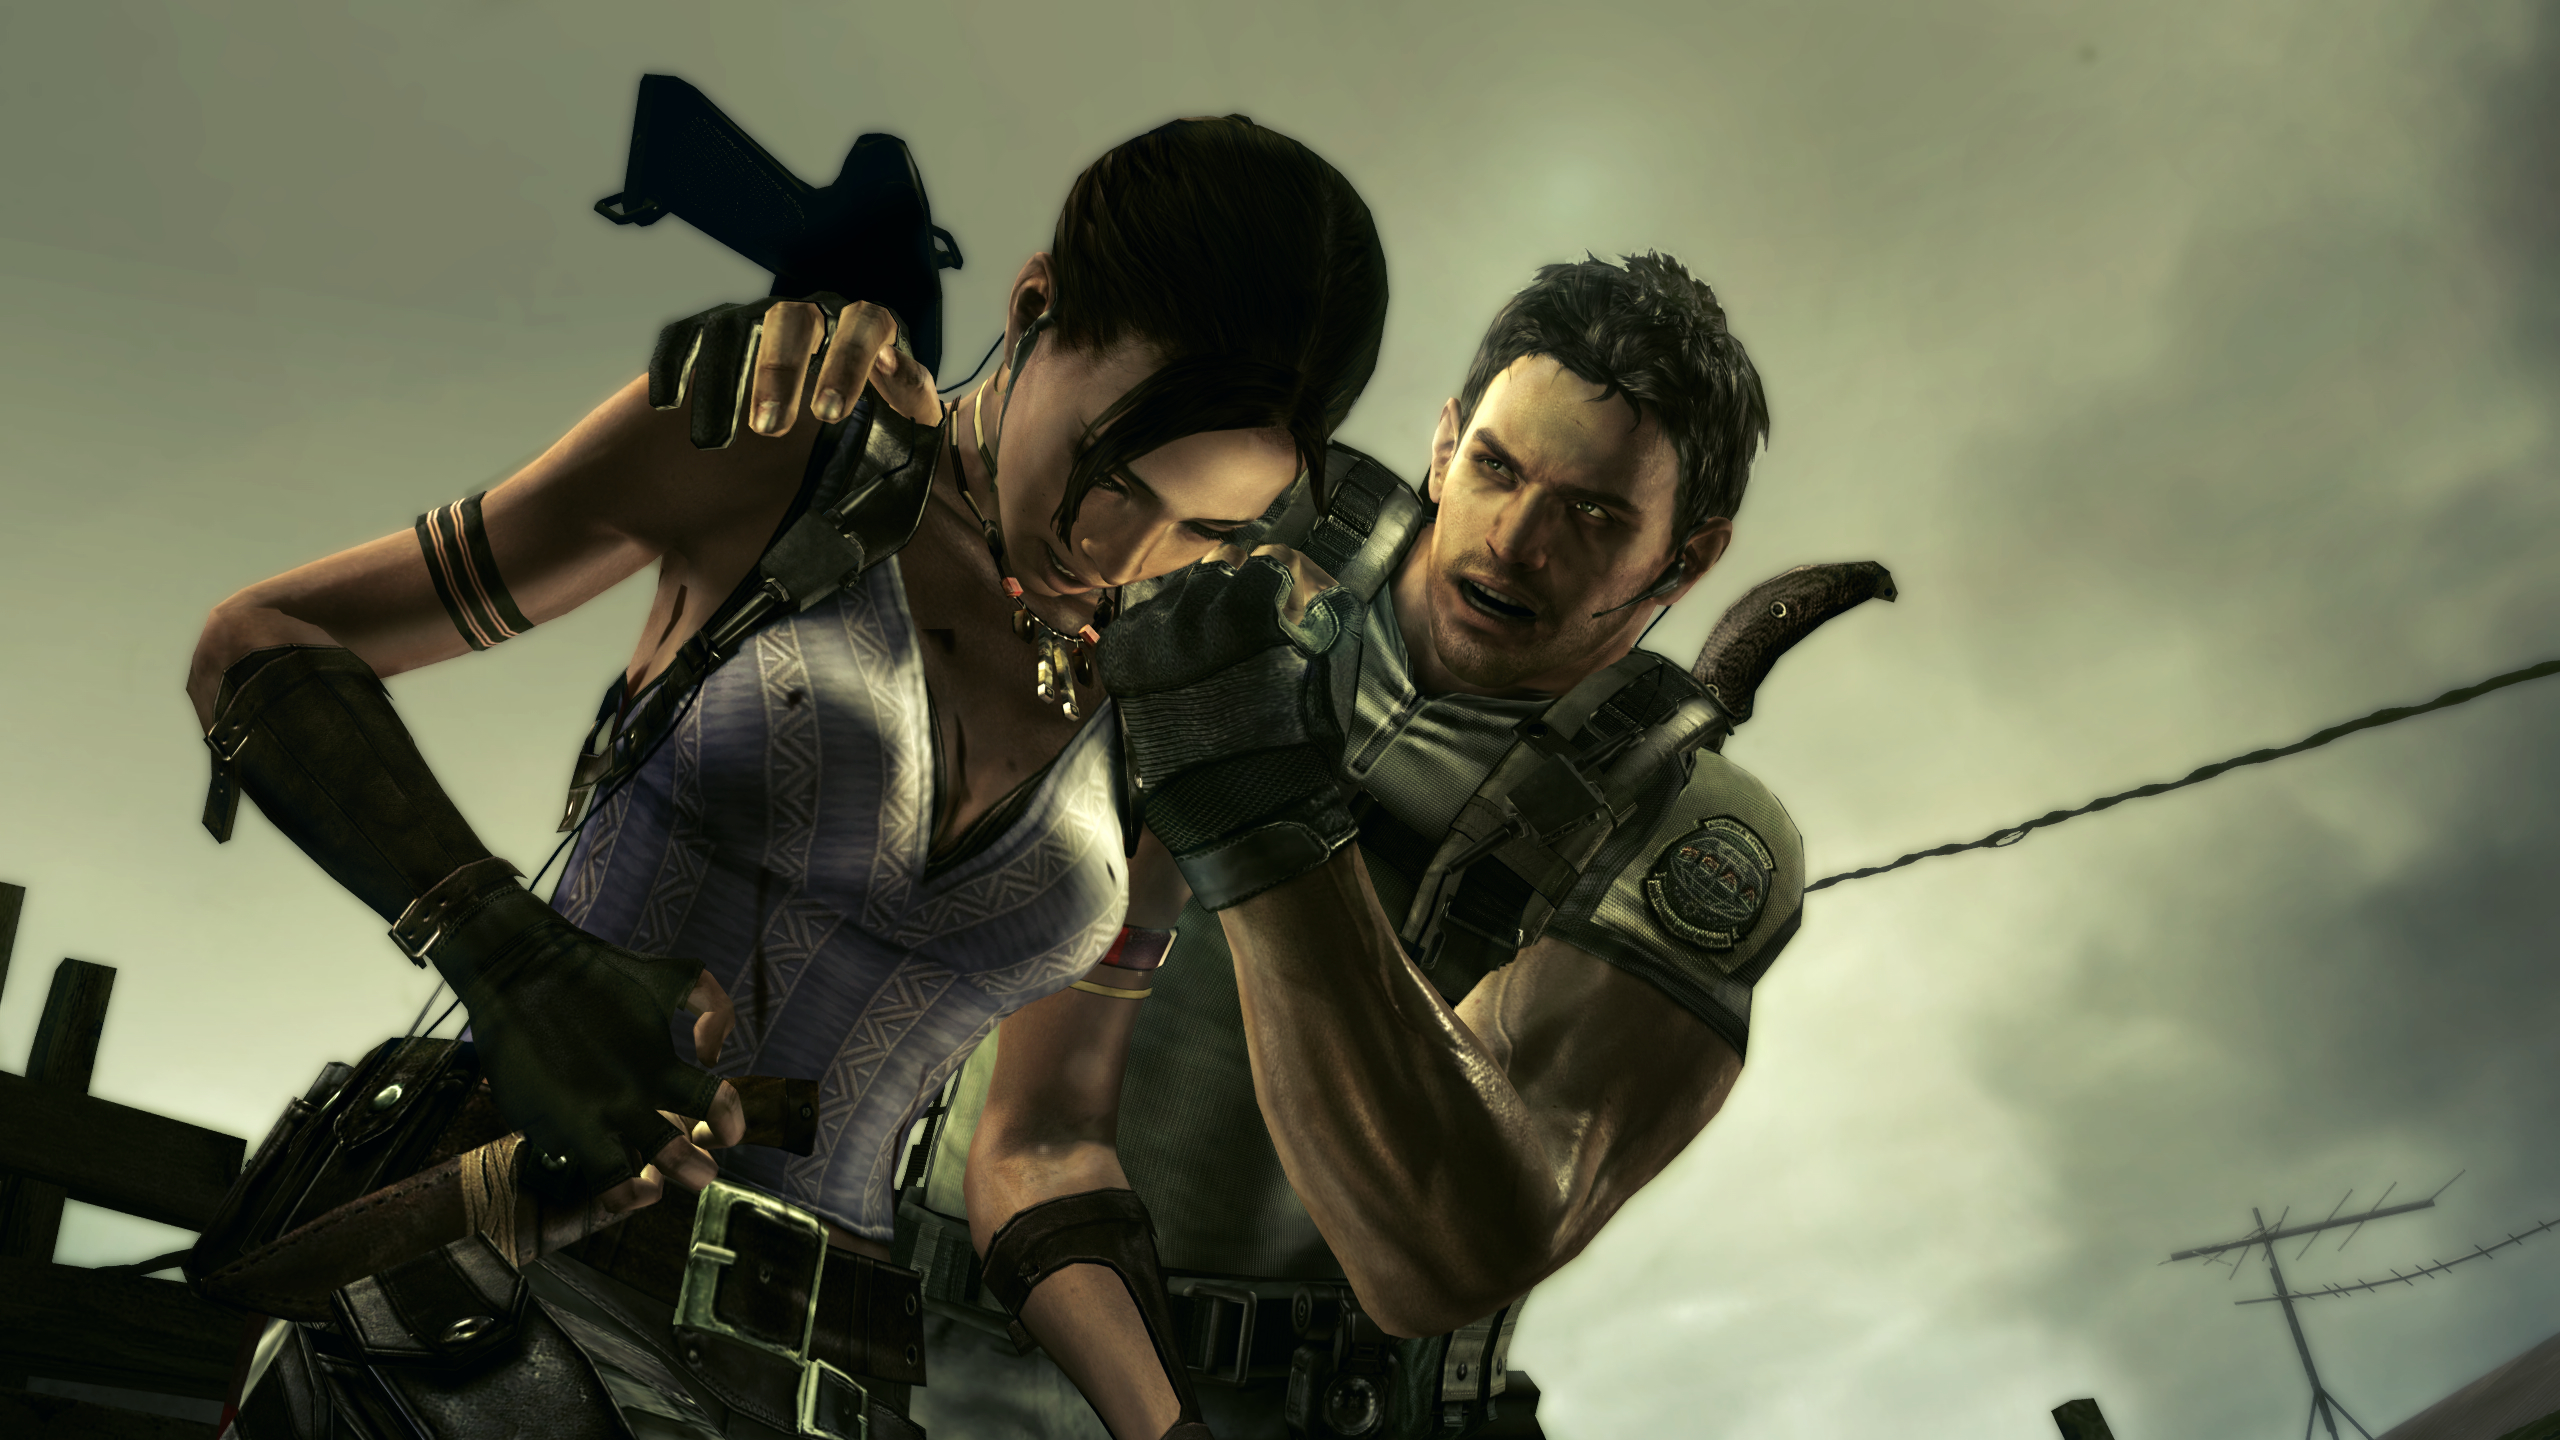 Download mobile wallpaper Resident Evil, Video Game, Chris Redfield, Resident Evil 5 for free.